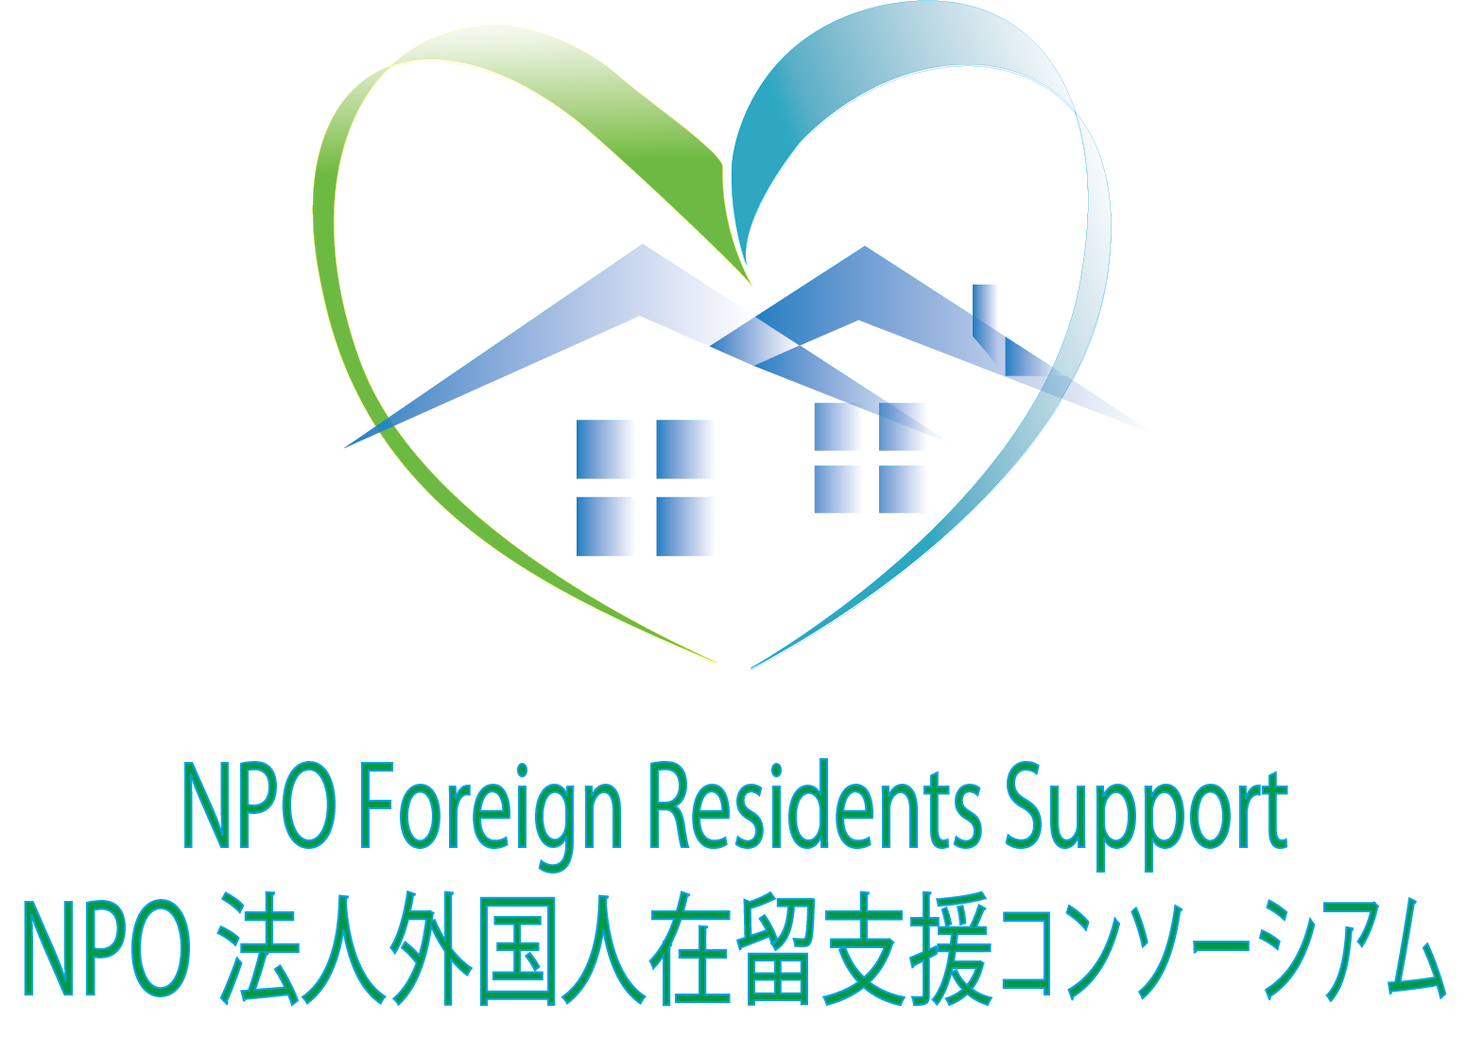 Npo法人外国人在留支援コンソーシアム創設のお知らせ Npo法人 外国人在留支援 コンソーシアムのプレスリリース